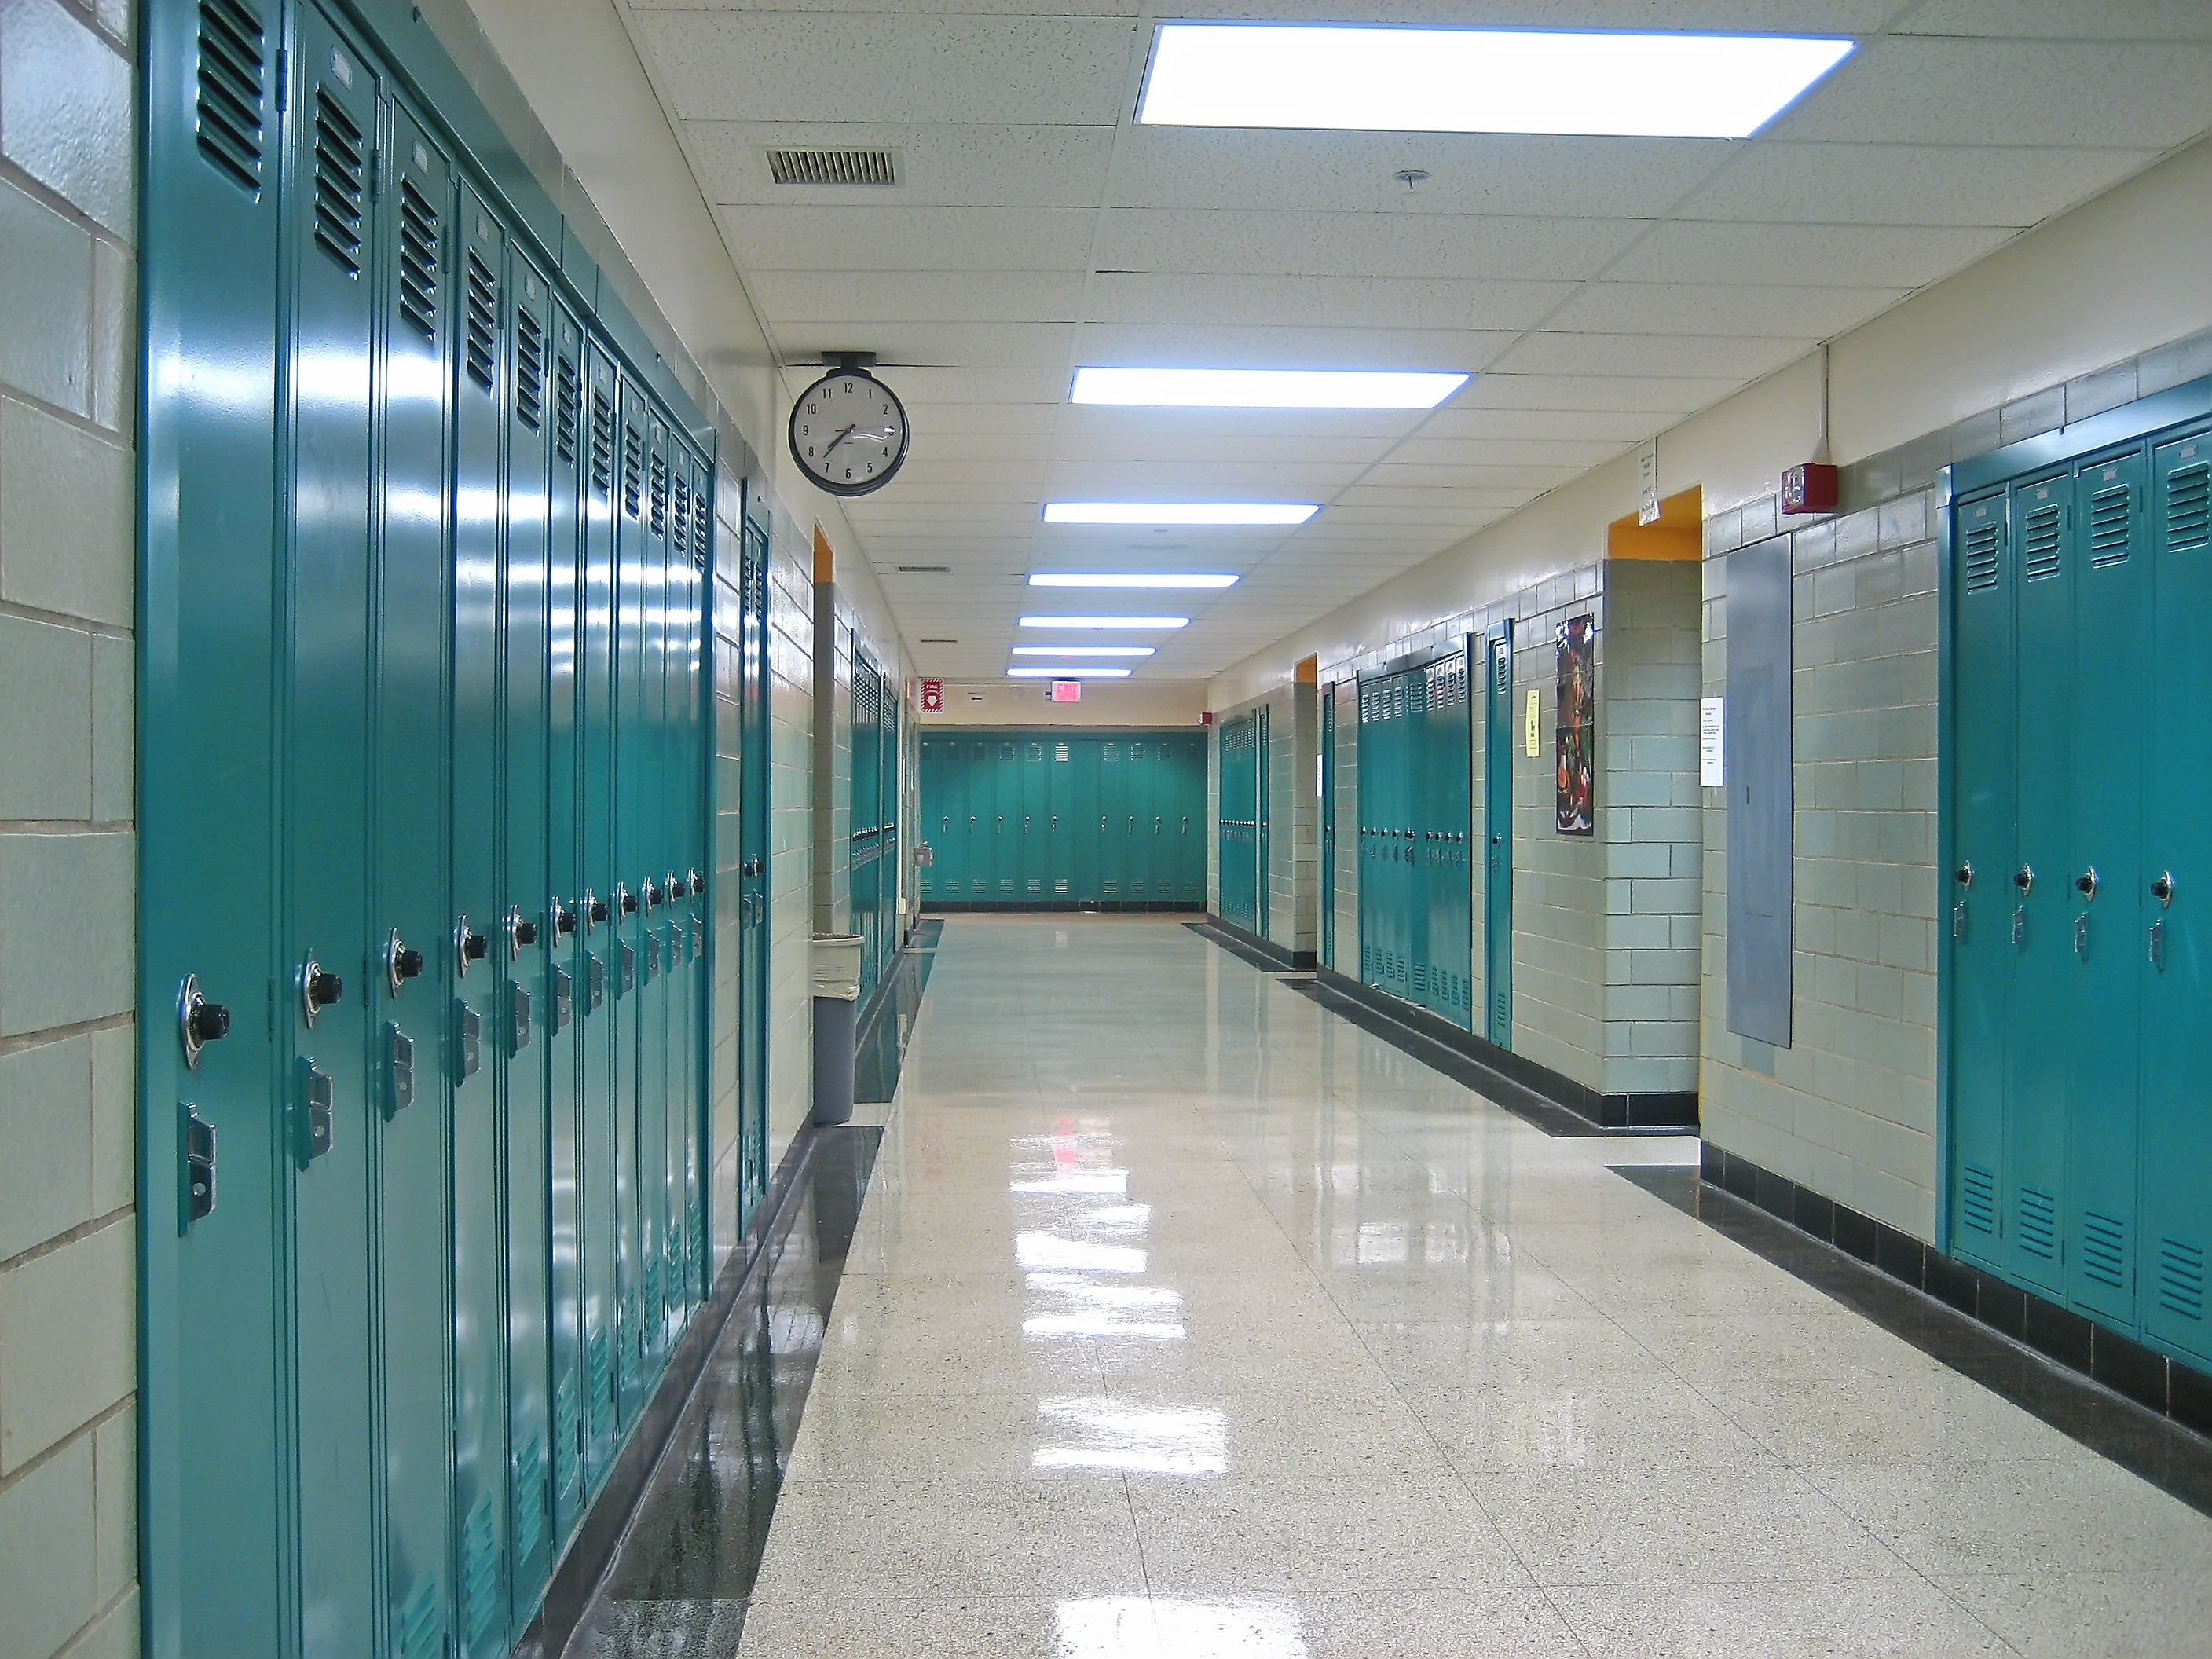 School Classroom Corridor Set 02 (Exterior)